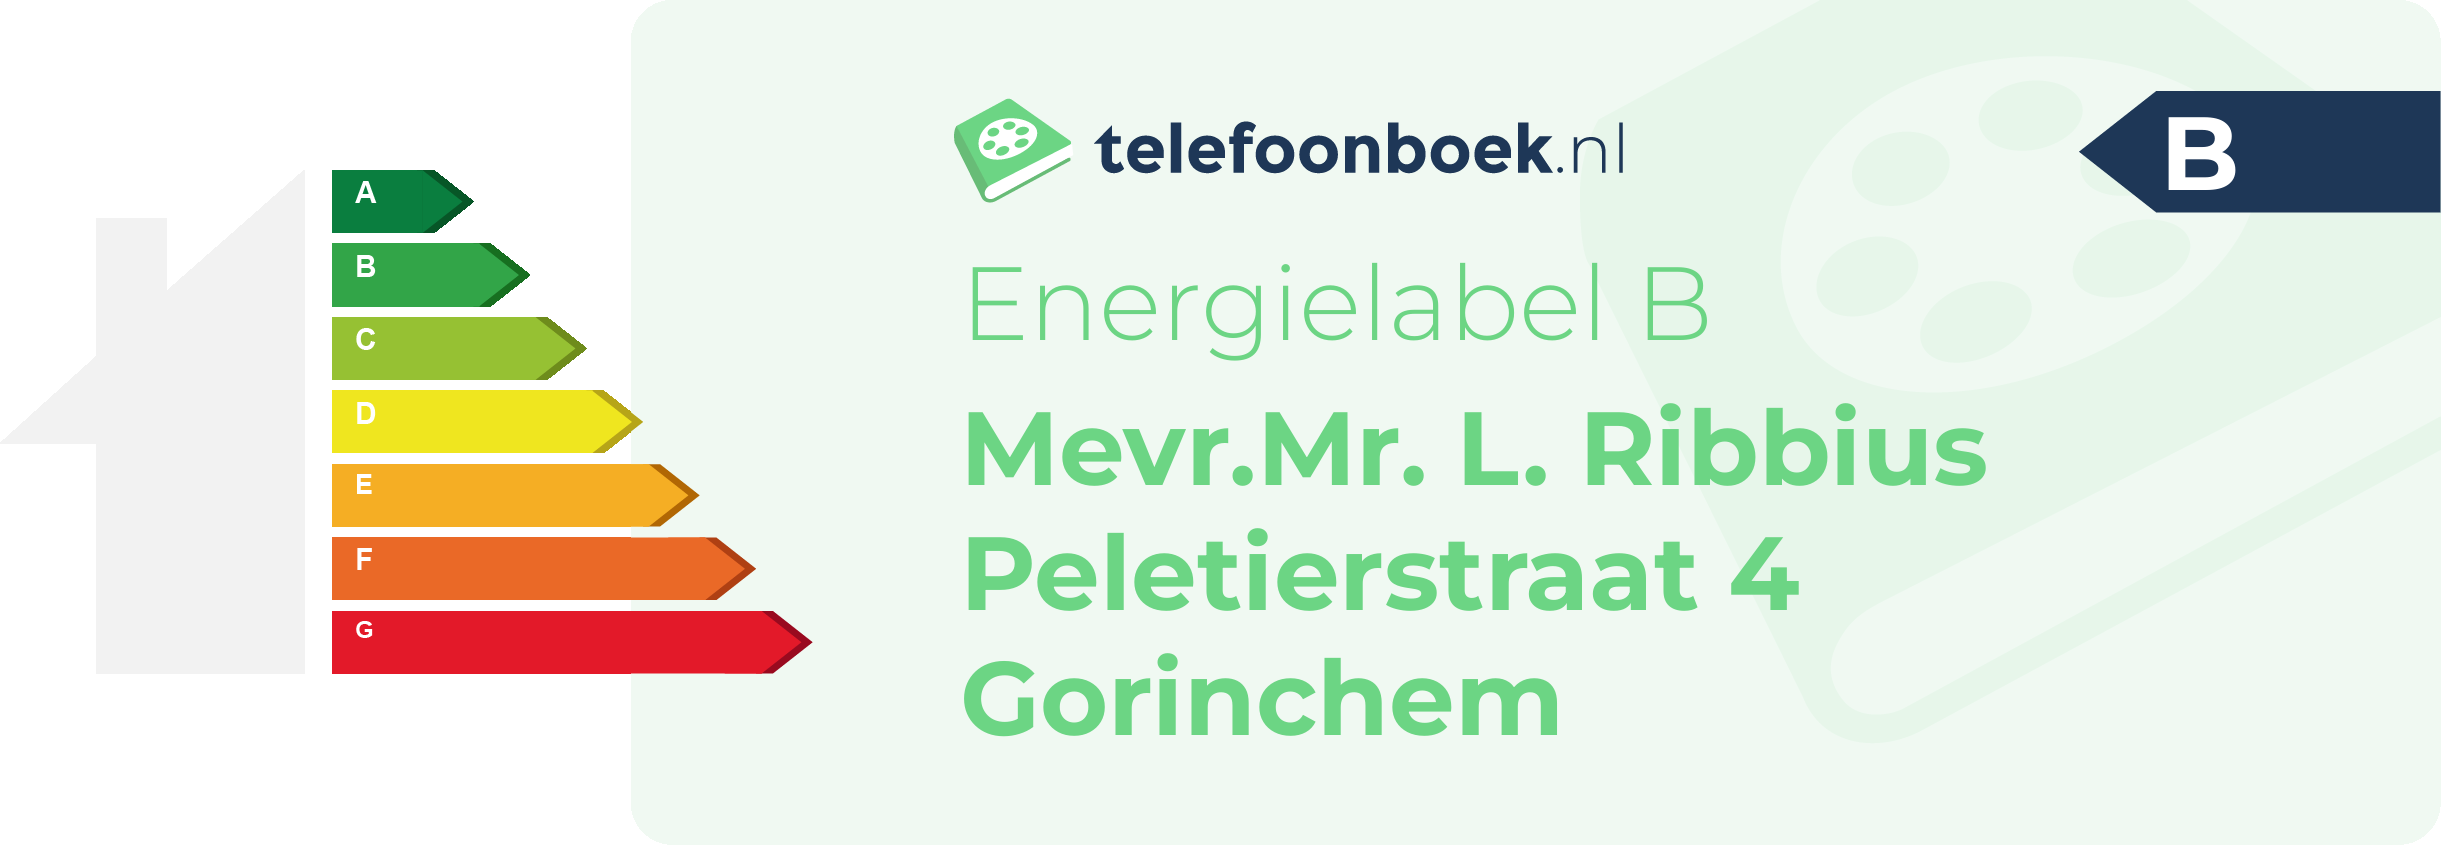 Energielabel Mevr.Mr. L. Ribbius Peletierstraat 4 Gorinchem